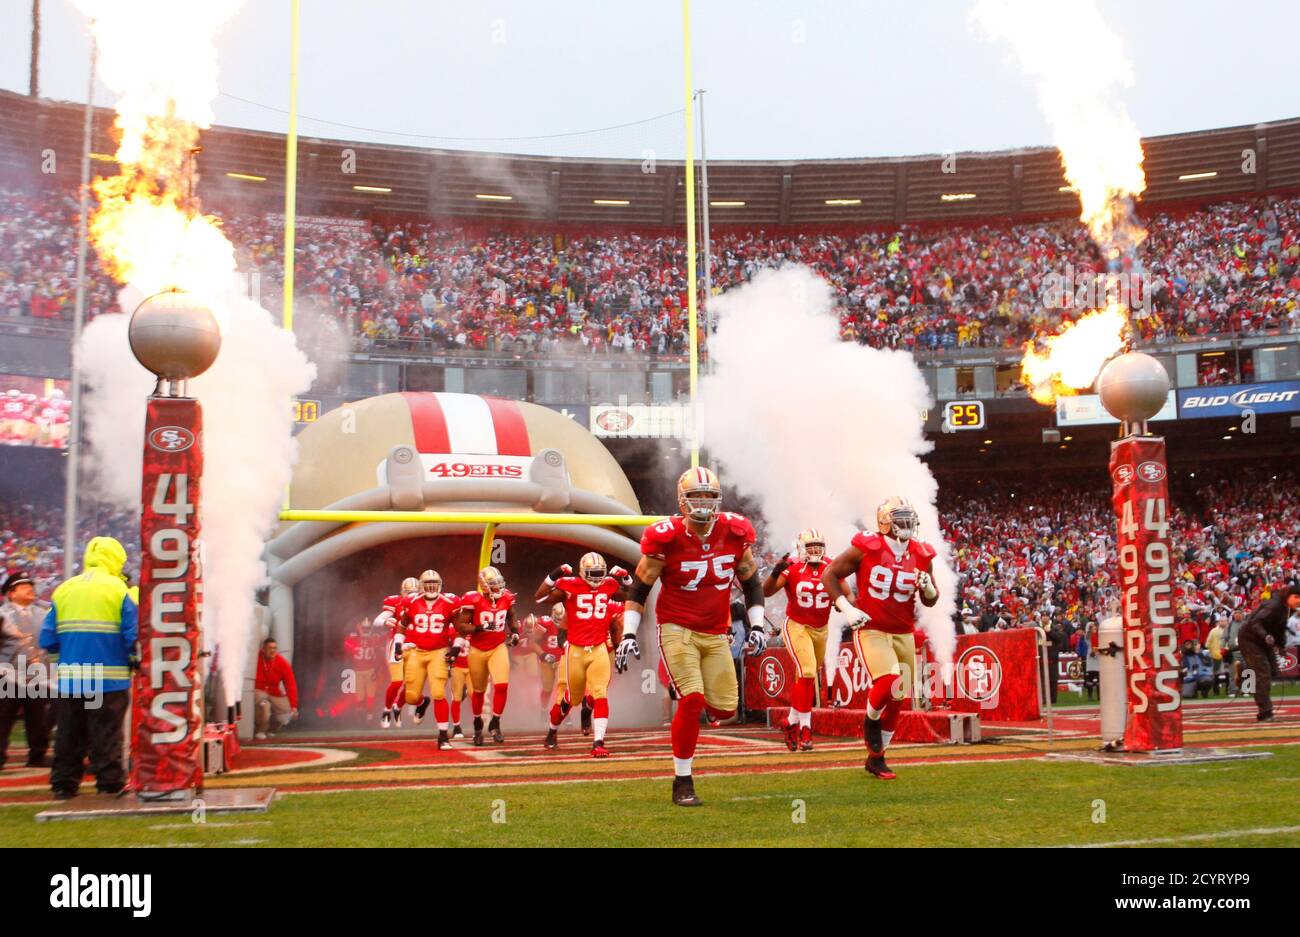 Les 49ers de San Francisco entrent sur le terrain avant le match du championnat NFL NFC contre les New York Giants à San Francisco, Californie, le 22 janvier 2012. REUTERS/Mike Blake (ETATS-UNIS - Tags: FOOTBALL SPORTIF) Banque D'Images